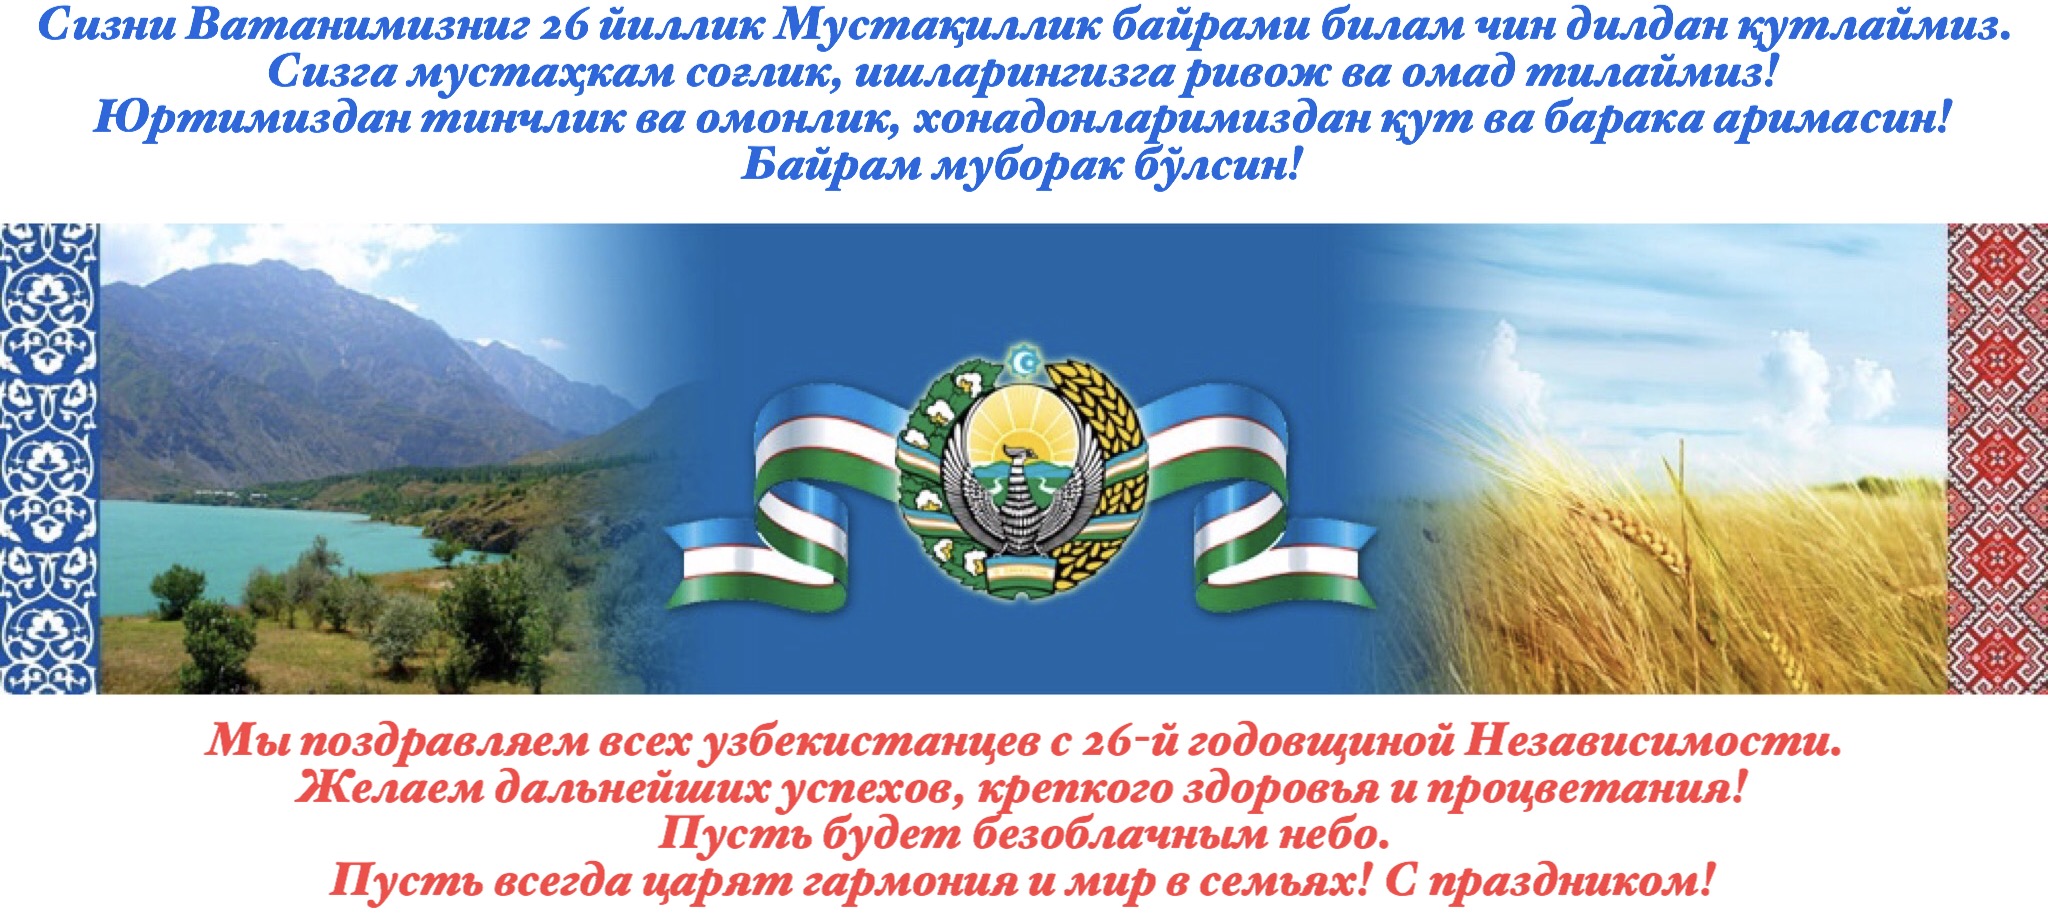 Красивый Текст На Узбекском Языке Для Поздравления